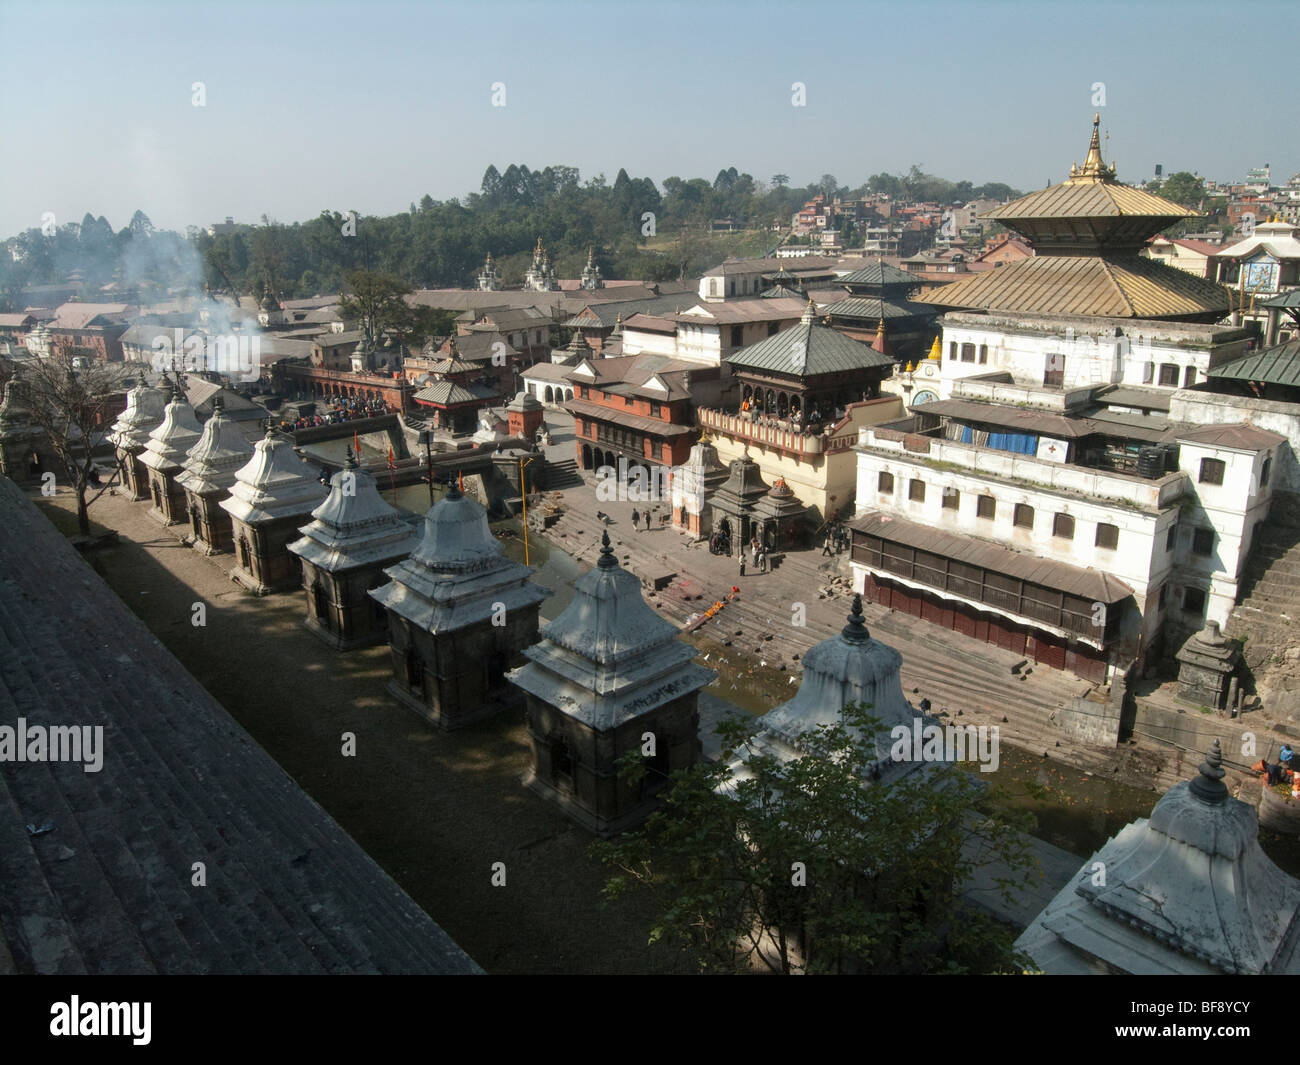 Temple de Pashupatinath est un temple hindou situé sur la rive de la rivière Bagmati sur la partie est de Katmandou, la capitale Banque D'Images